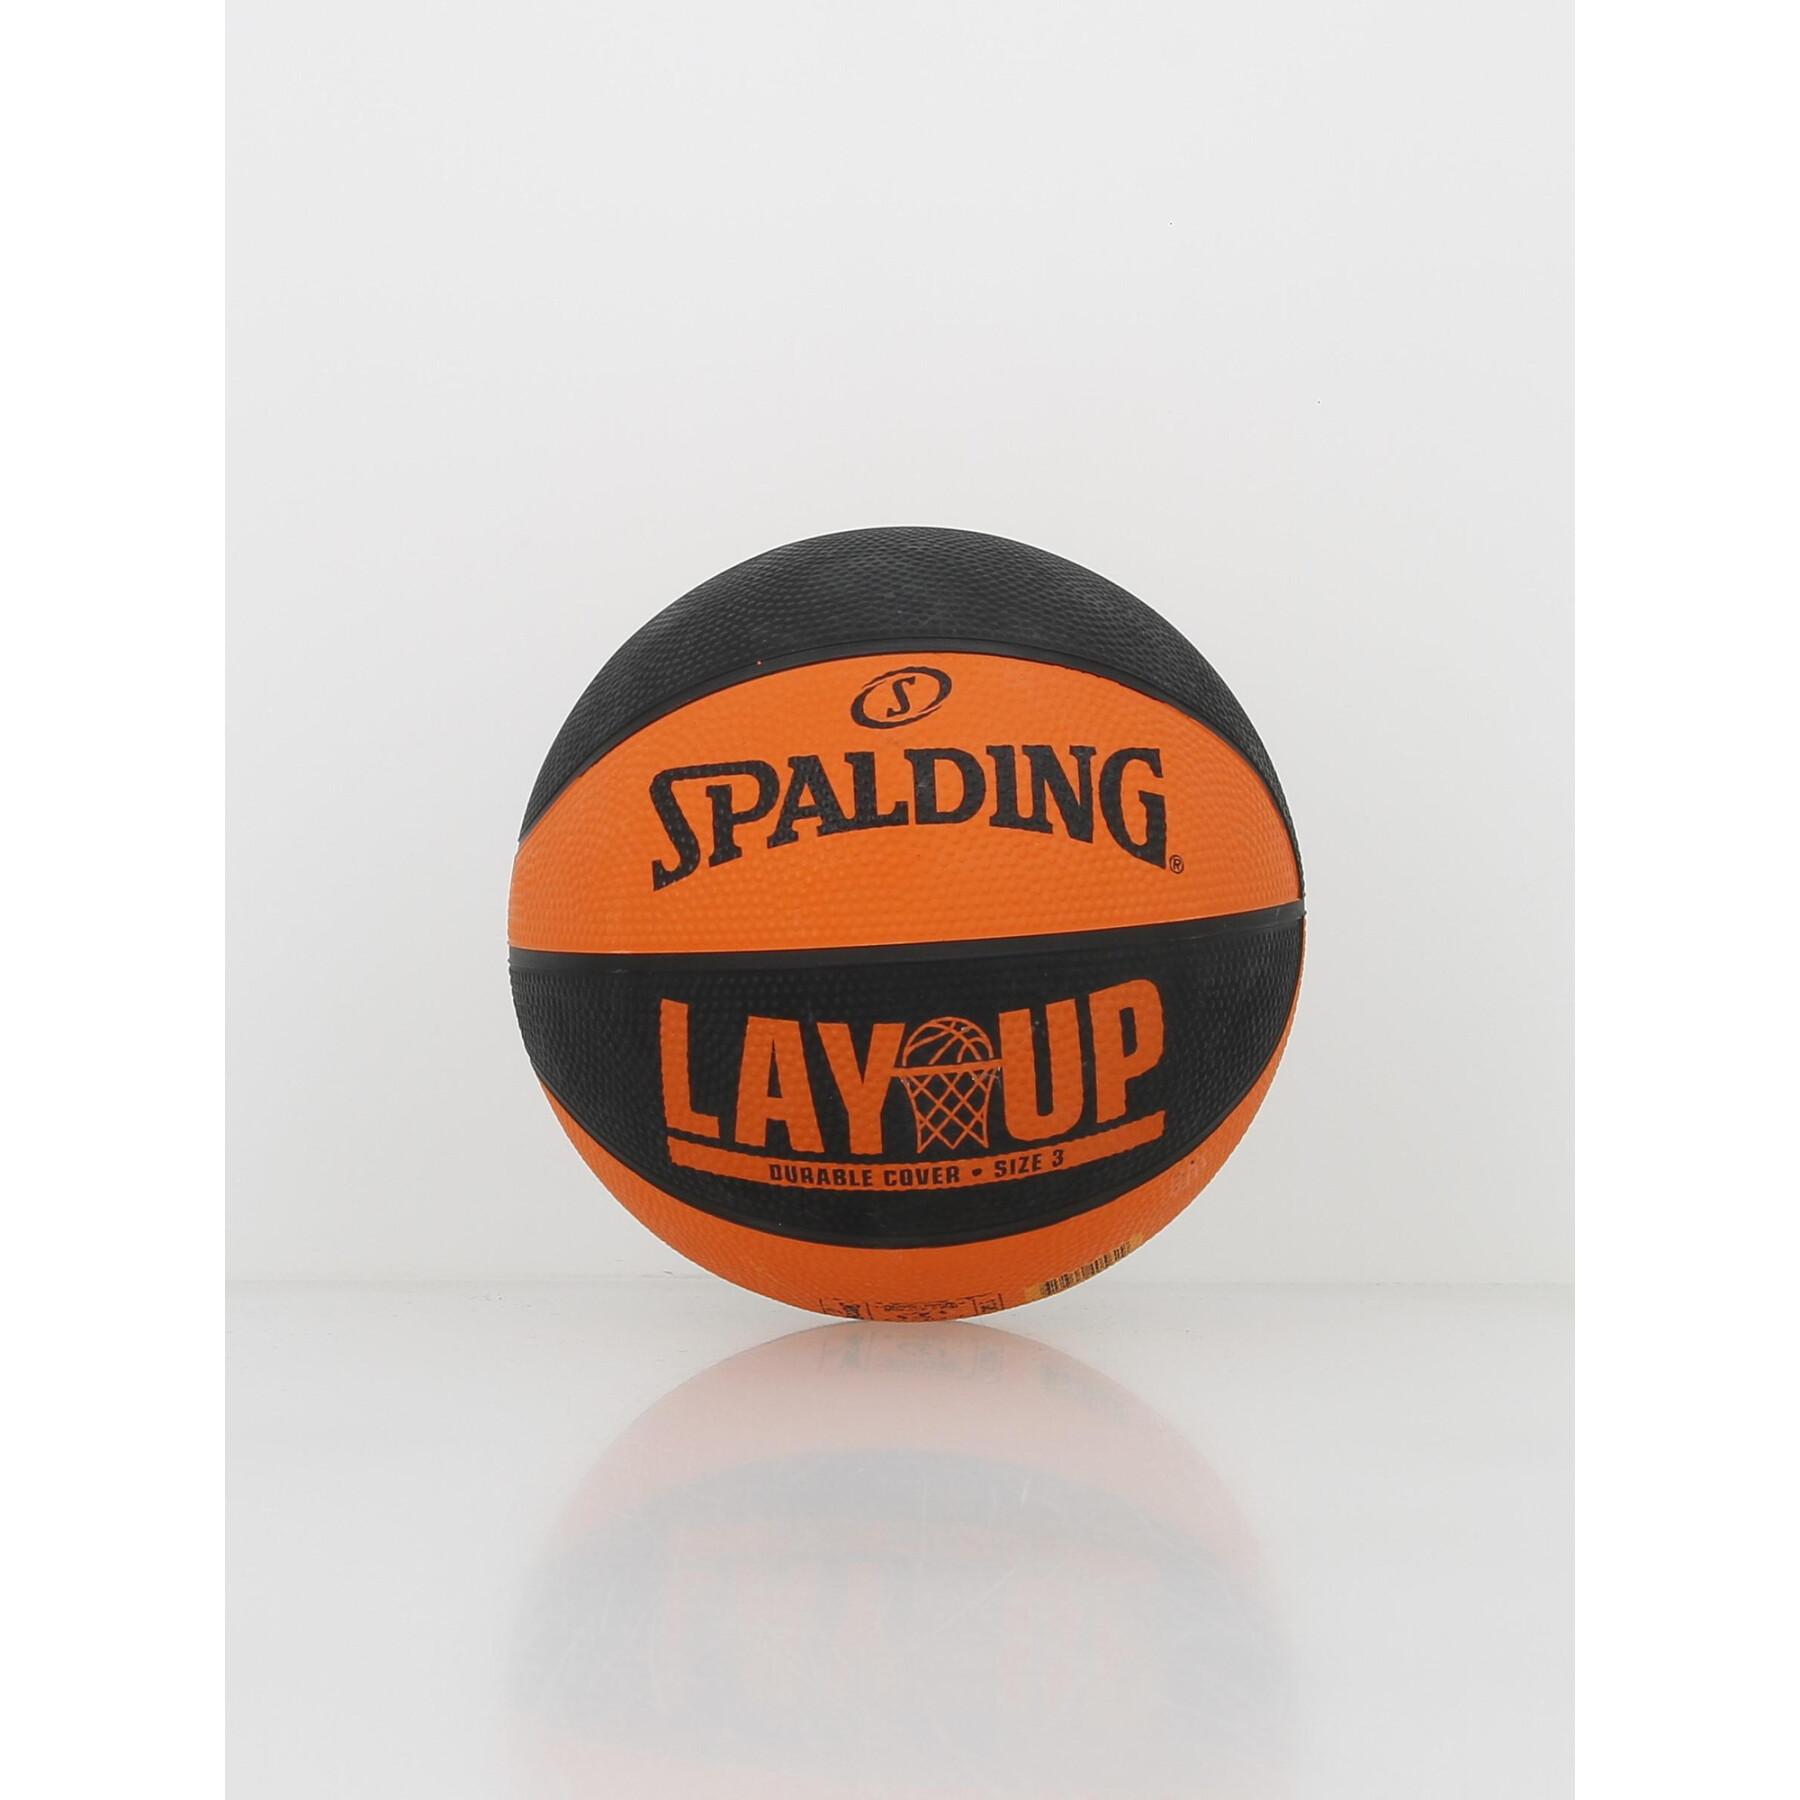 Balon Spalding Layup TF-50